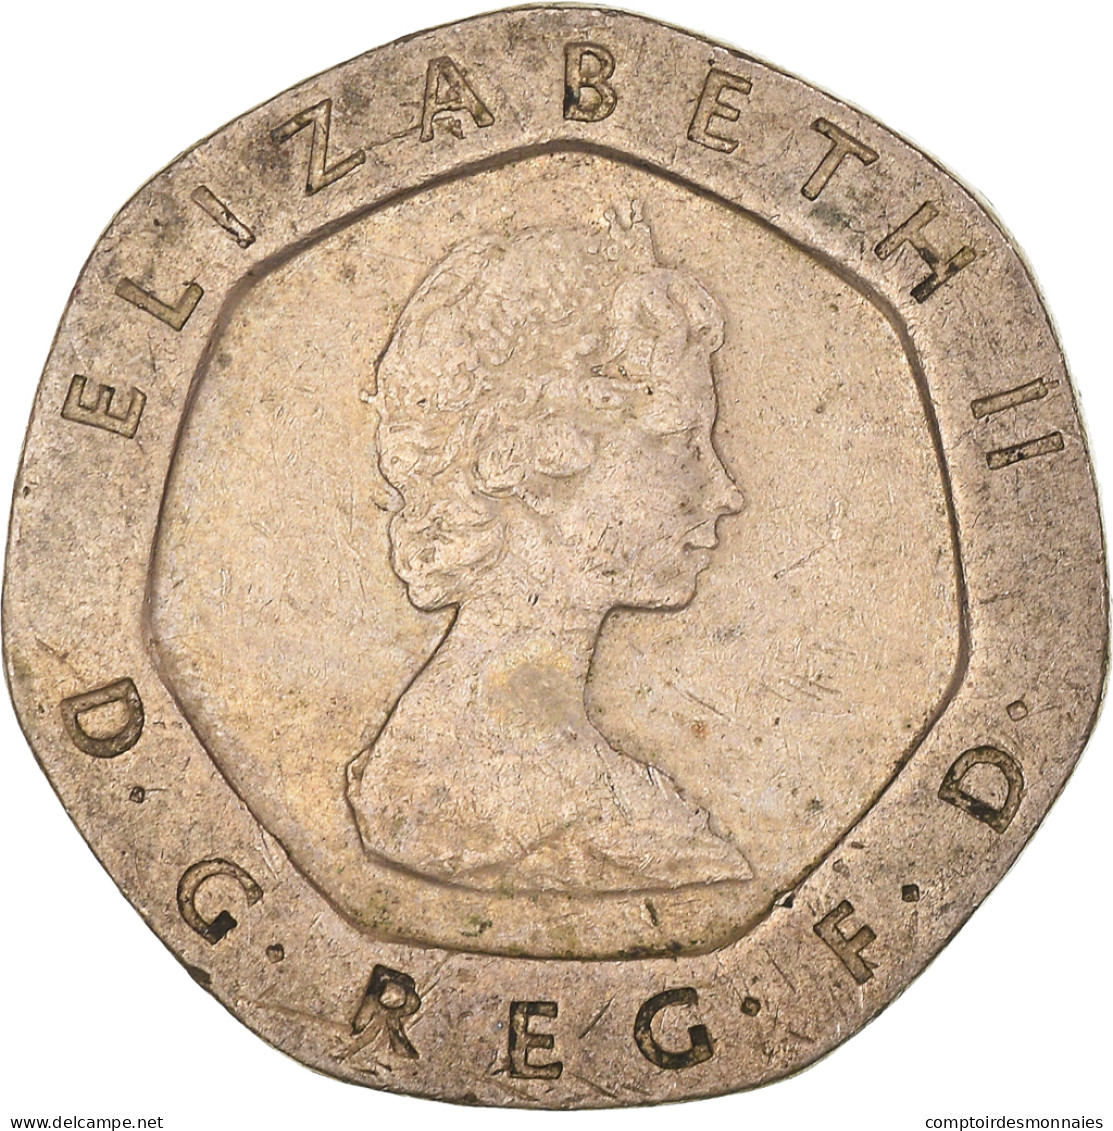 Monnaie, Grande-Bretagne, Elizabeth II, 20 Pence, 1982, TTB, Cupro-nickel - 20 Pence